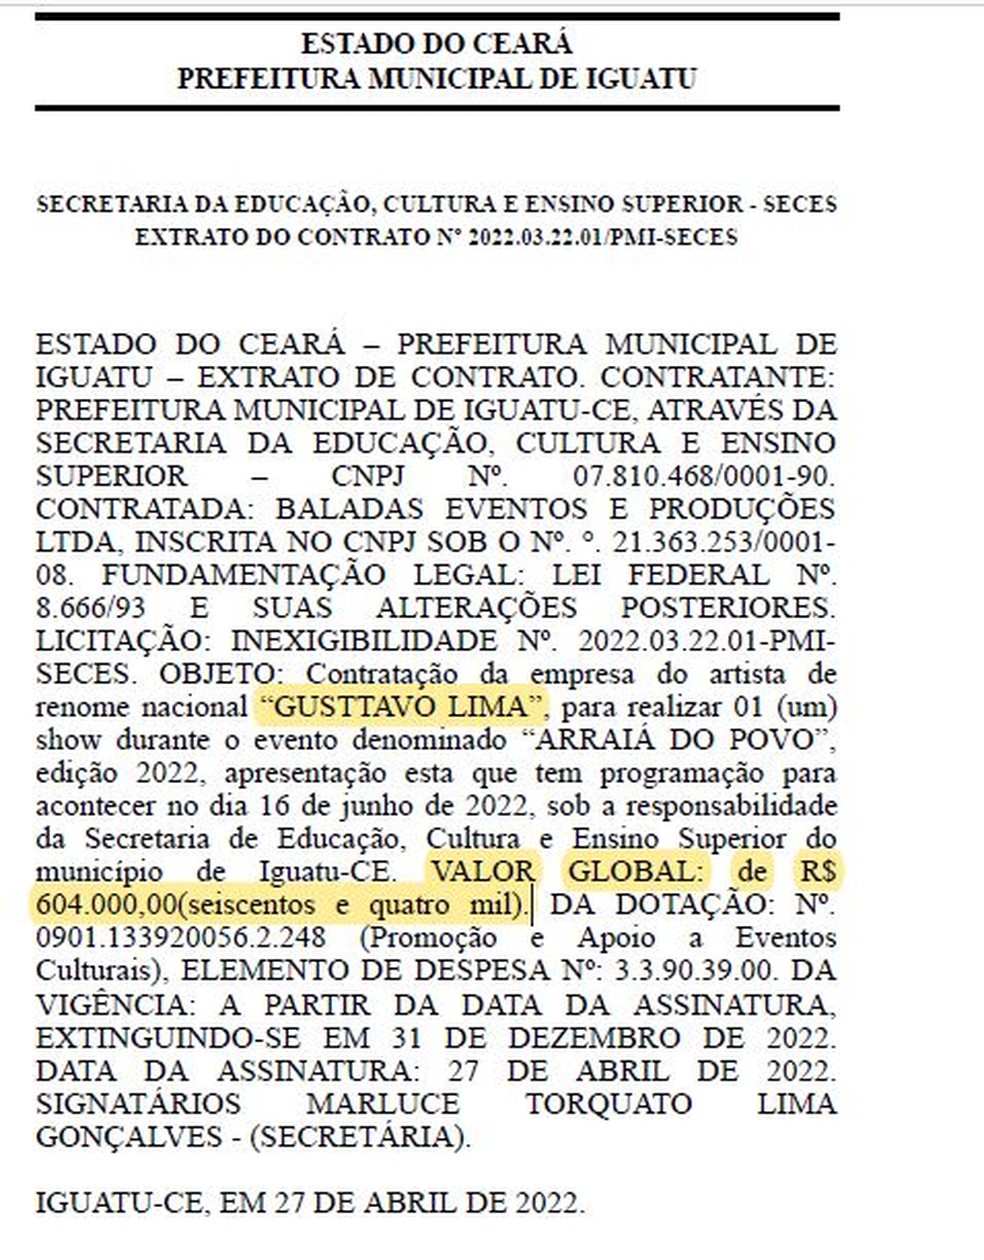 Valor de R$ 604 mil por show de Gusttavo Lima foi firmado em contrato válido até 31 de dezembro de 2022. — Foto: Diário Oficial dos Municípios do Estado do Ceará/Reprodução